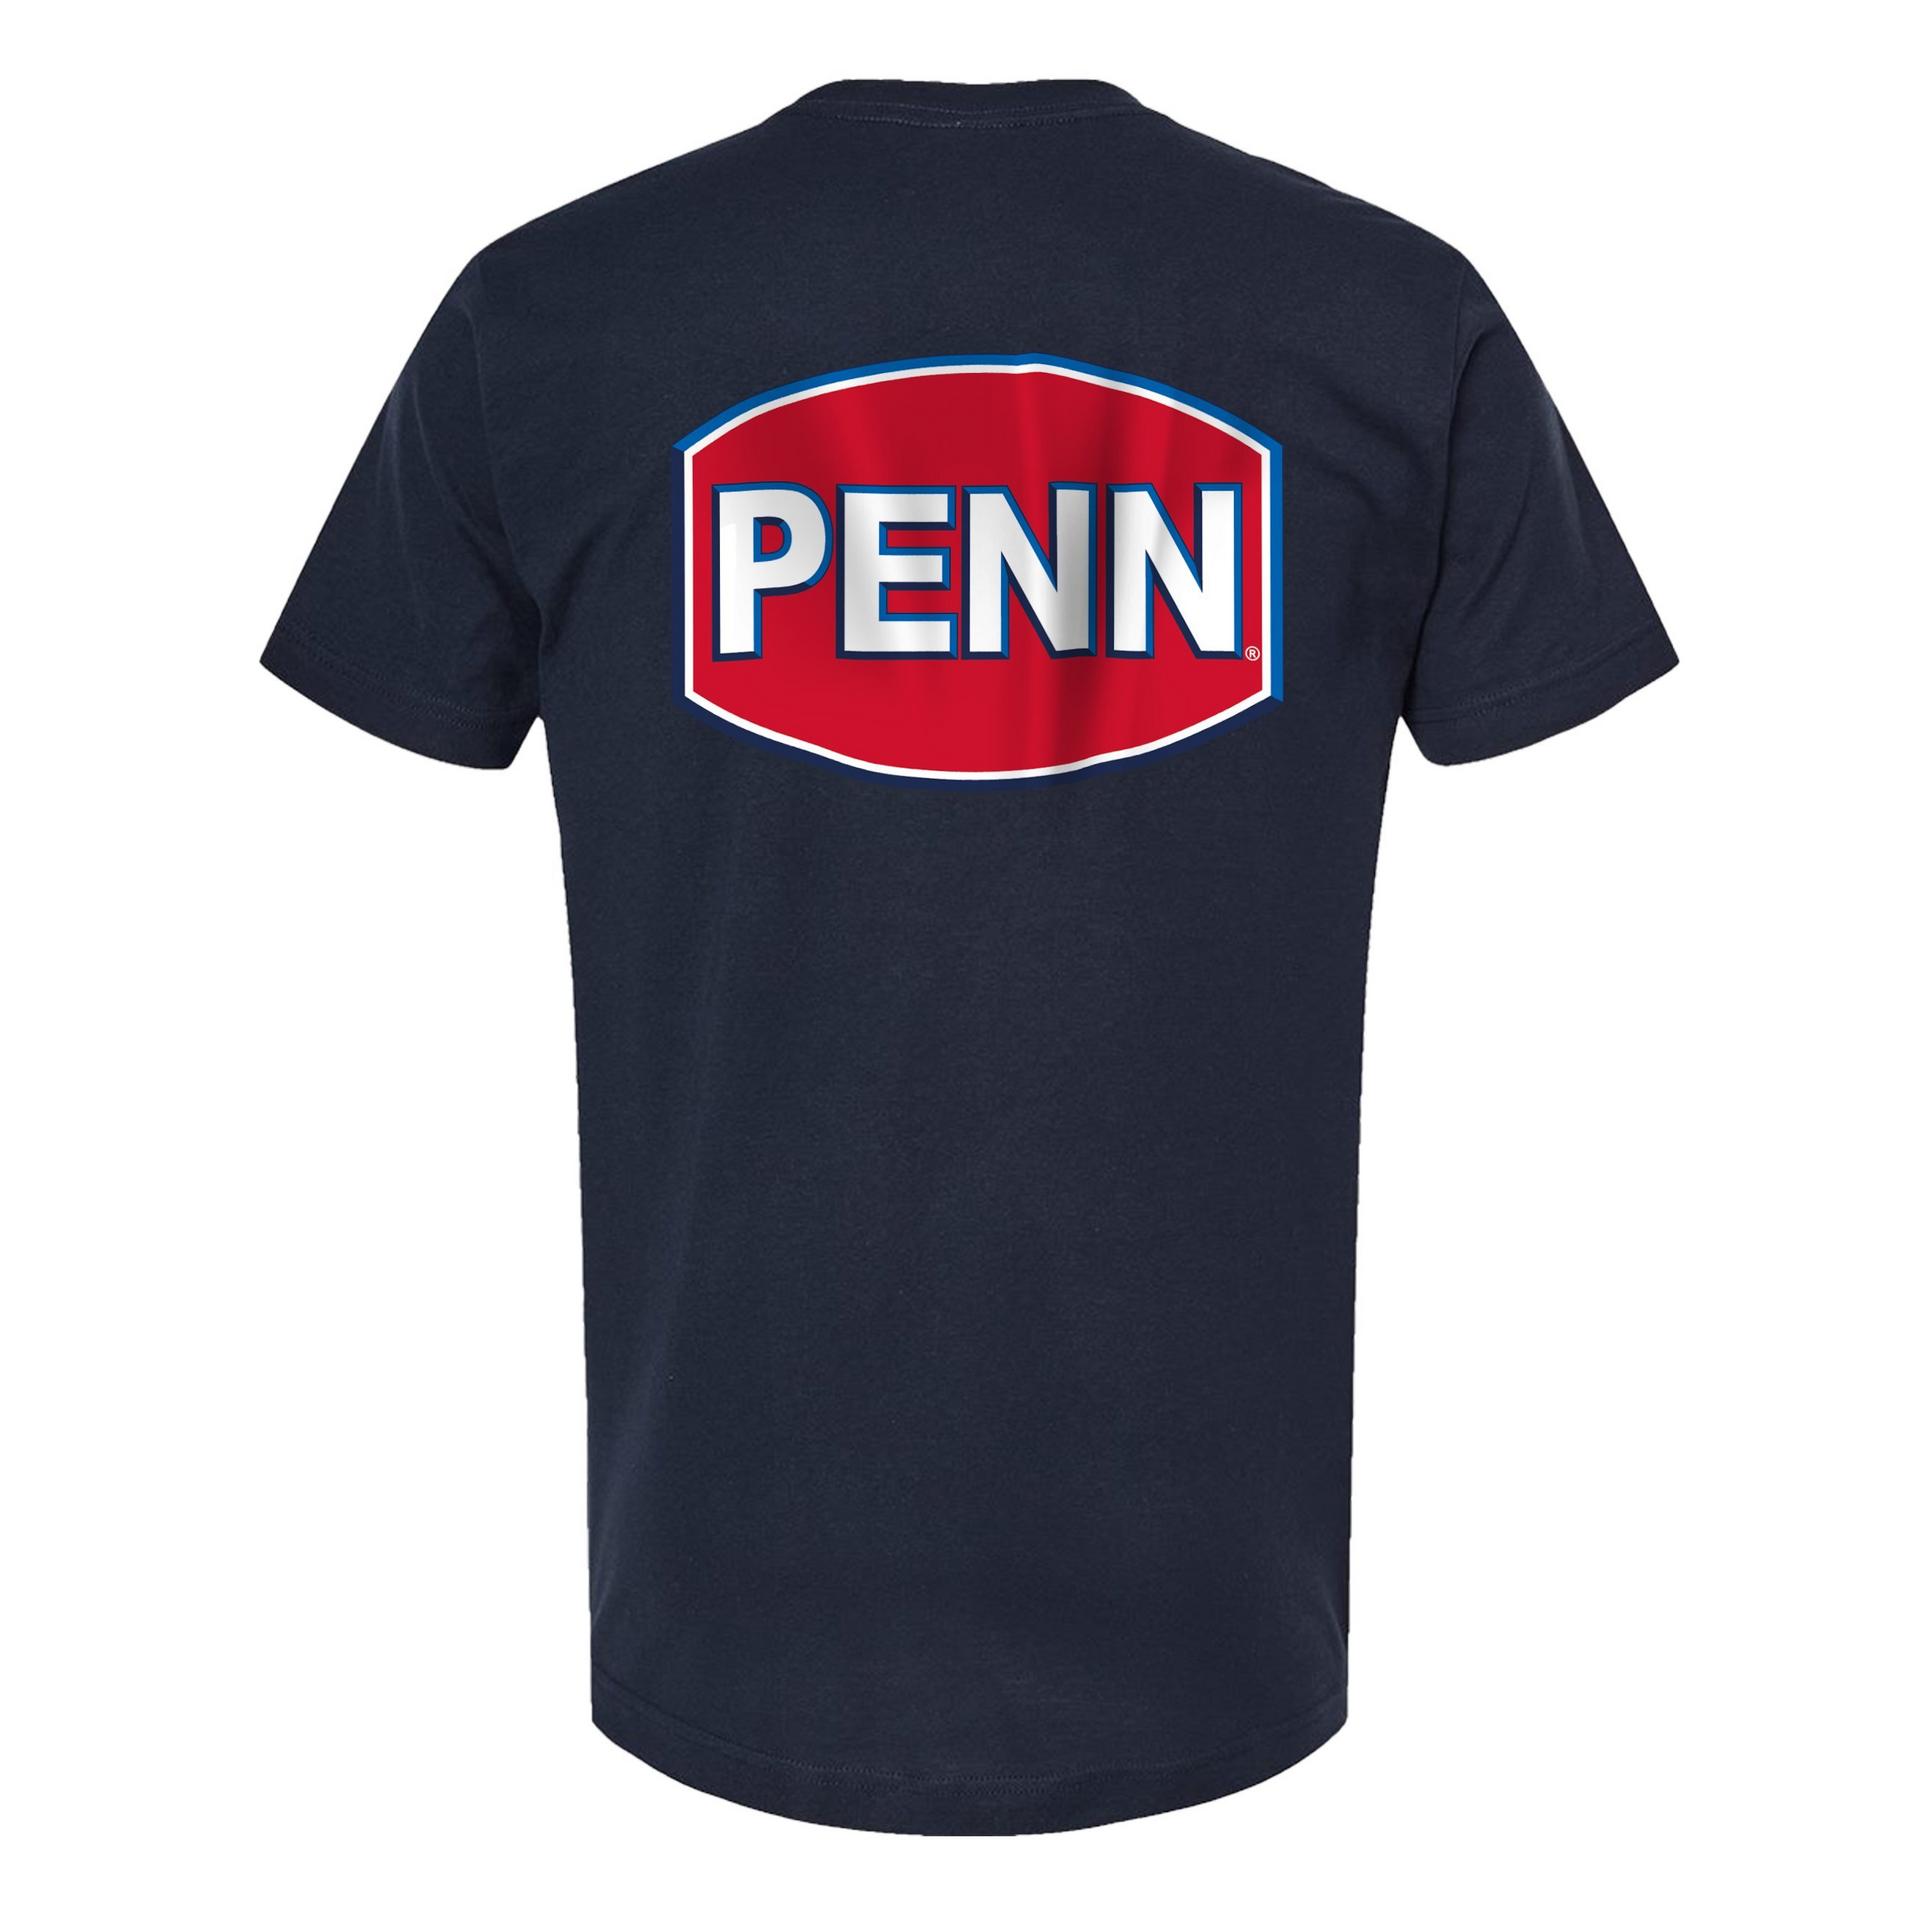 PENN T-Shirts